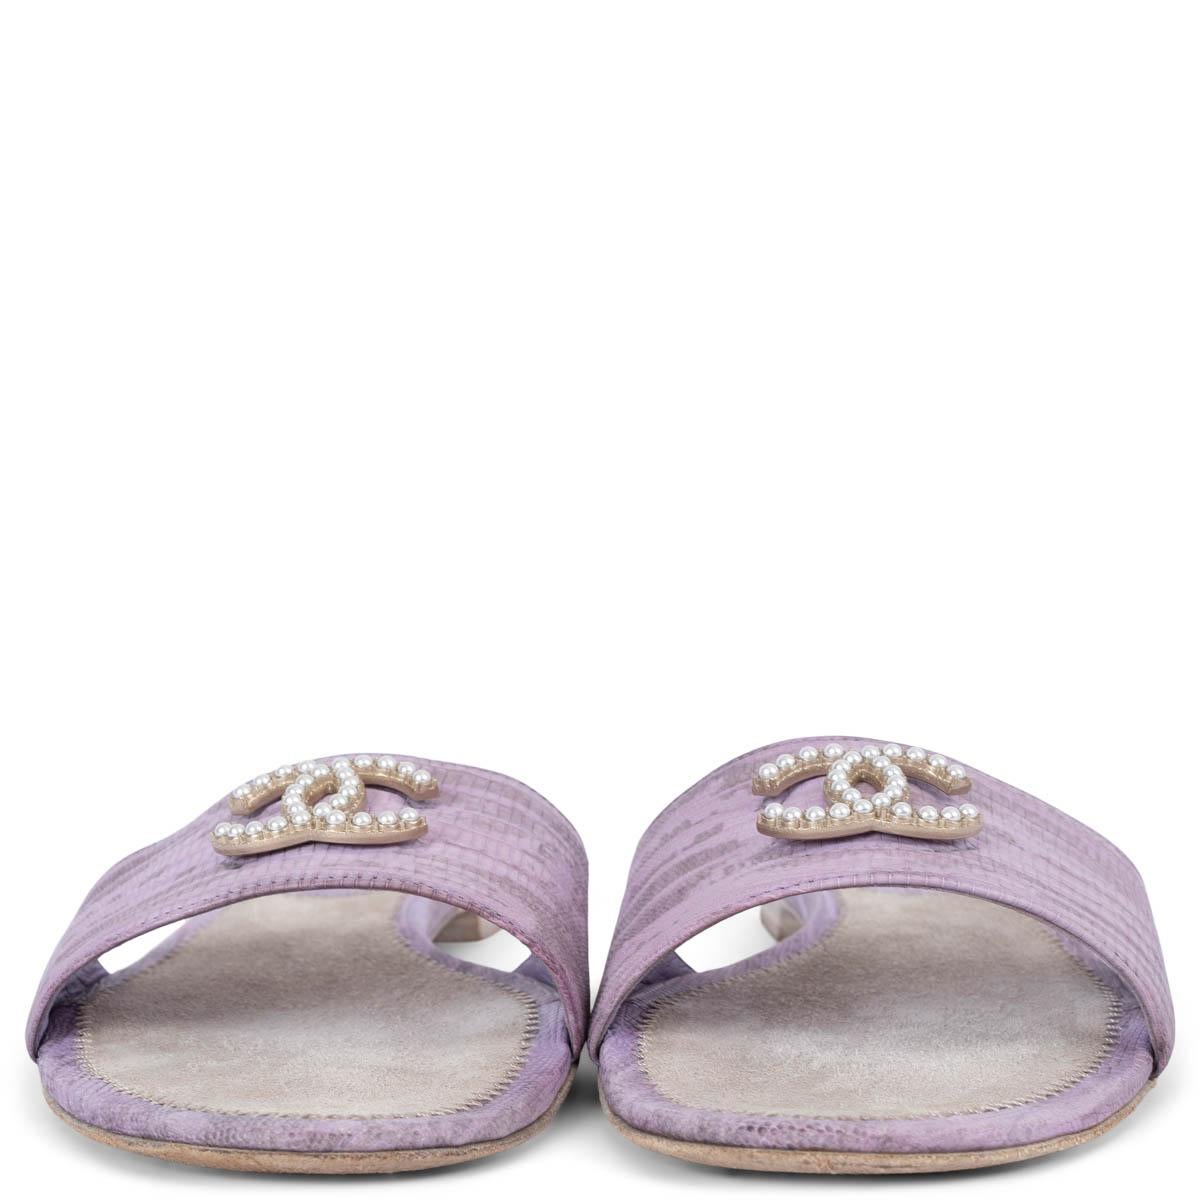 Sandales à glissière 100% authentiques de Chanel en lézard lilas. Le logo CC est orné de perles et les semelles sont en daim gris. Ils ont été portés et sont en excellent état. 

Mesures
Modèle	13C G28942
Taille imprimée	38
Taille des